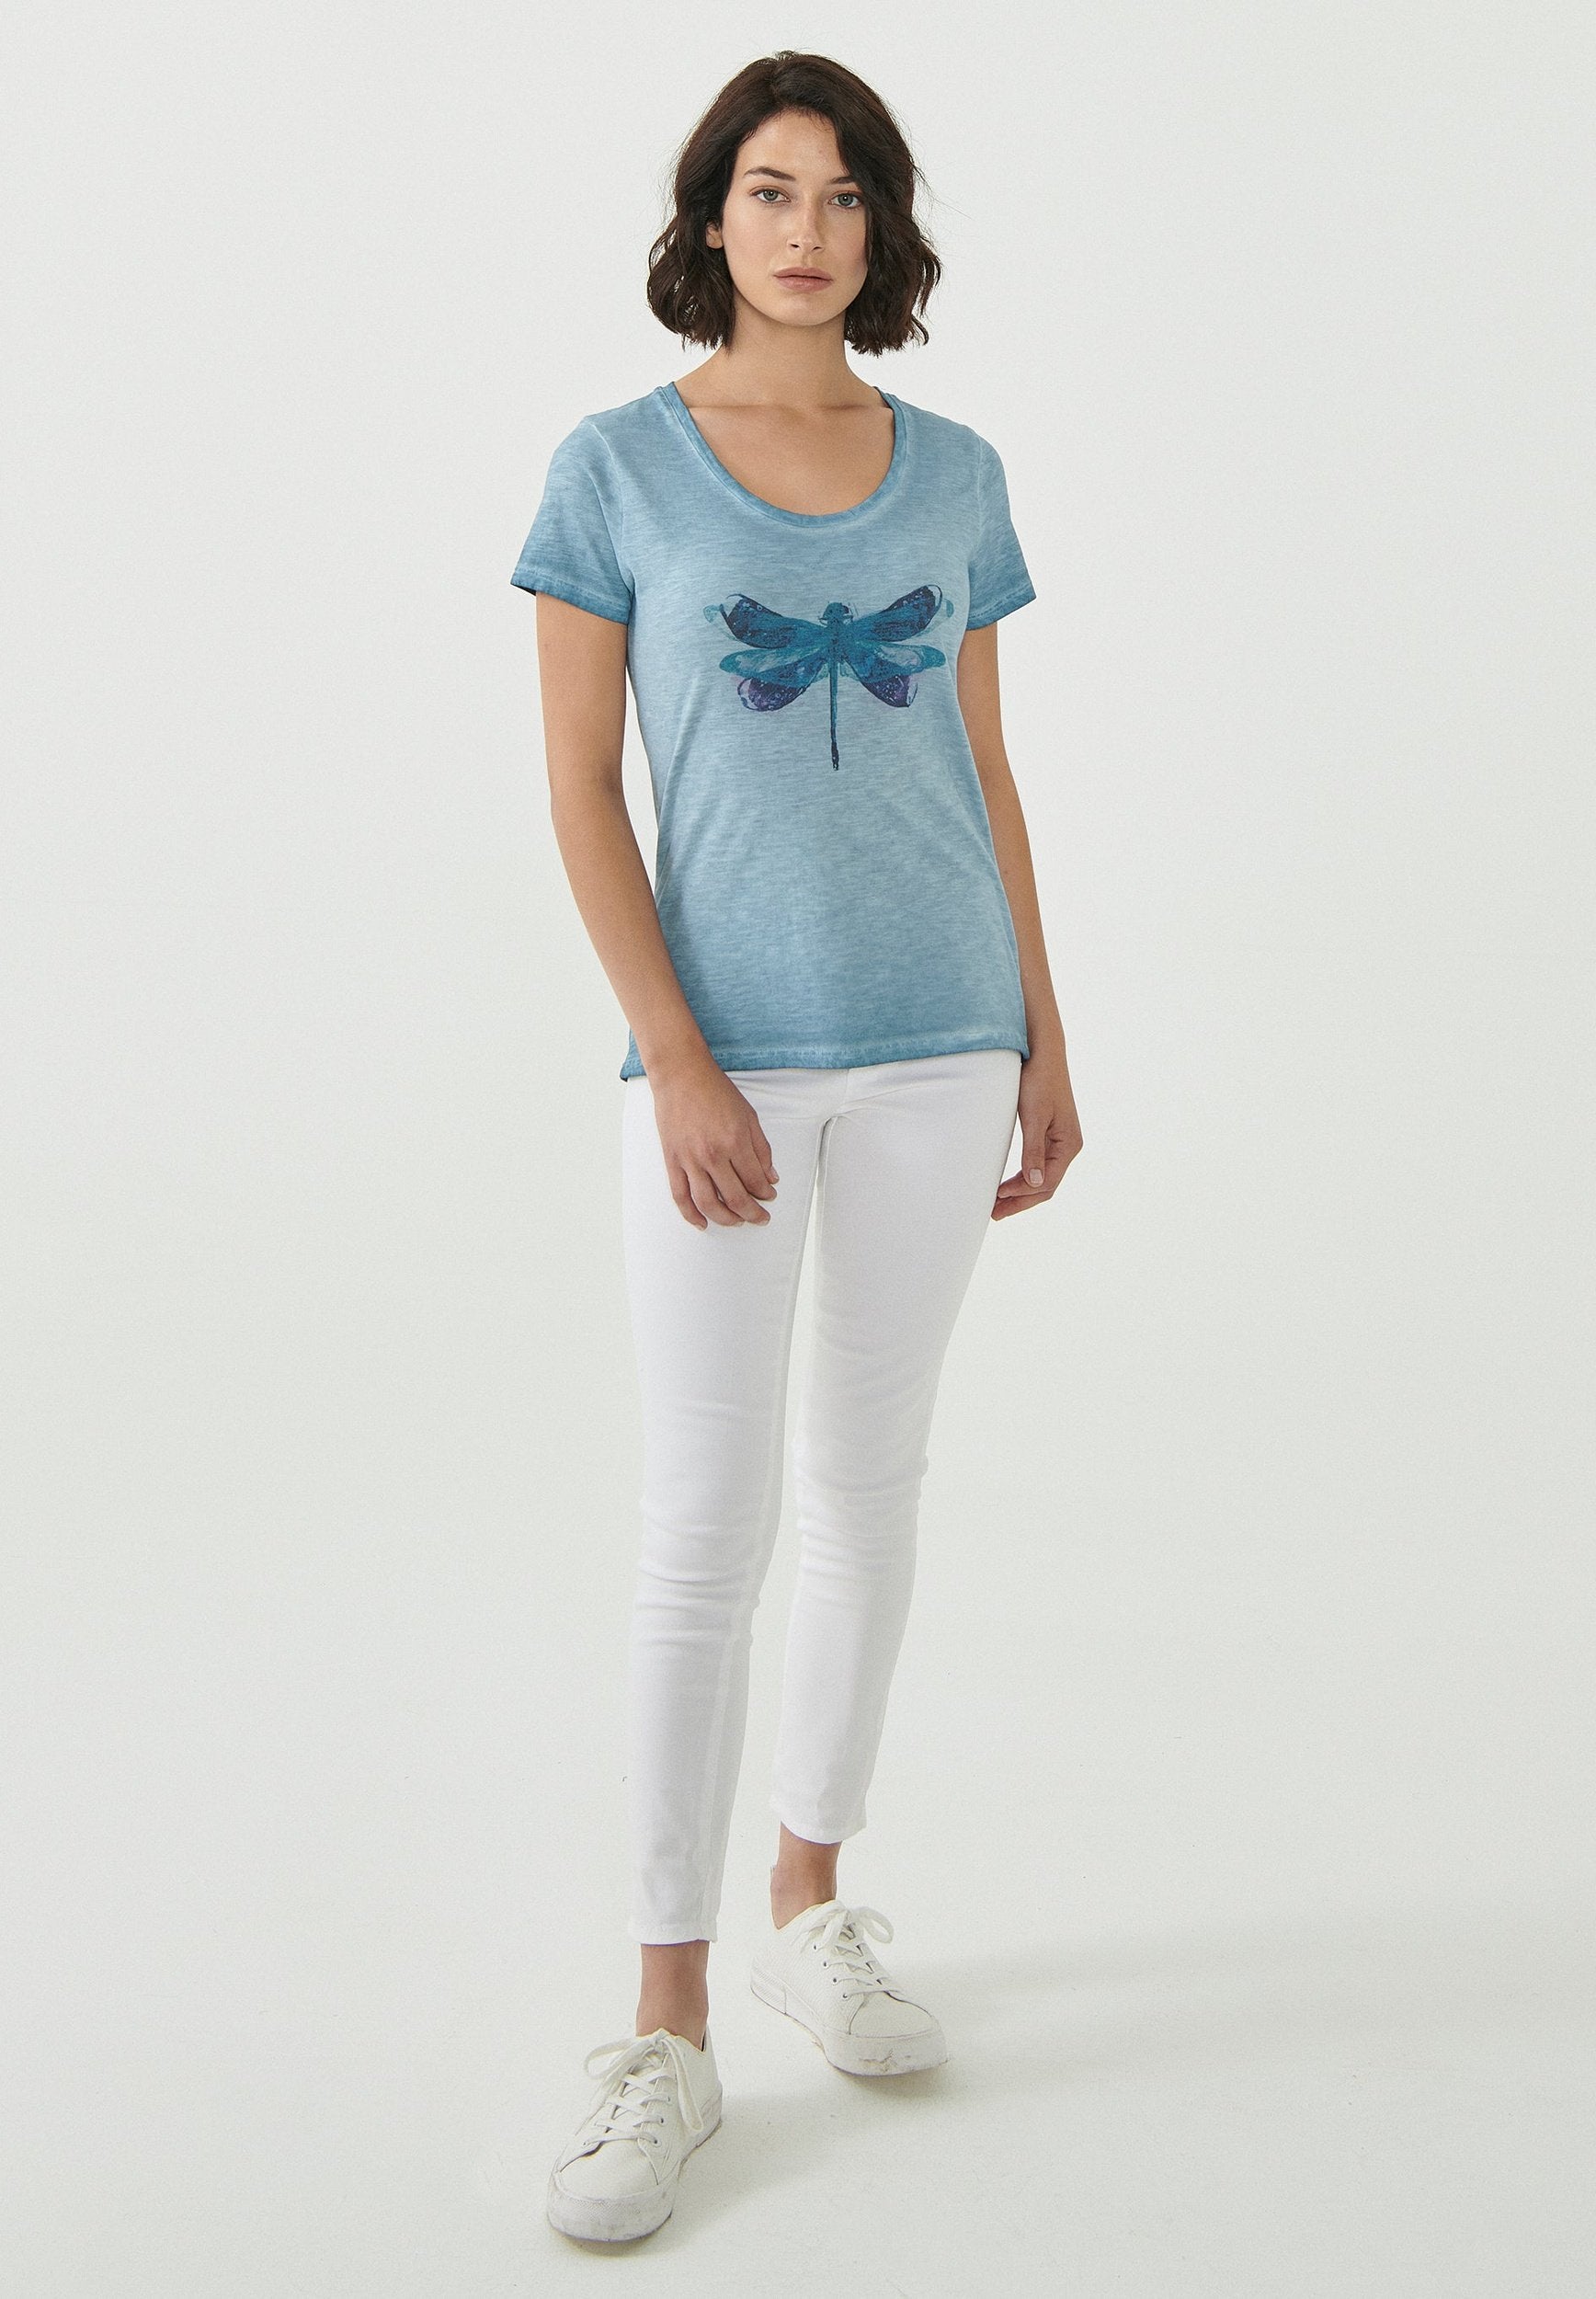 Garment Dyed T-Shirt aus Bio-Baumwolle mit Libellen-Print